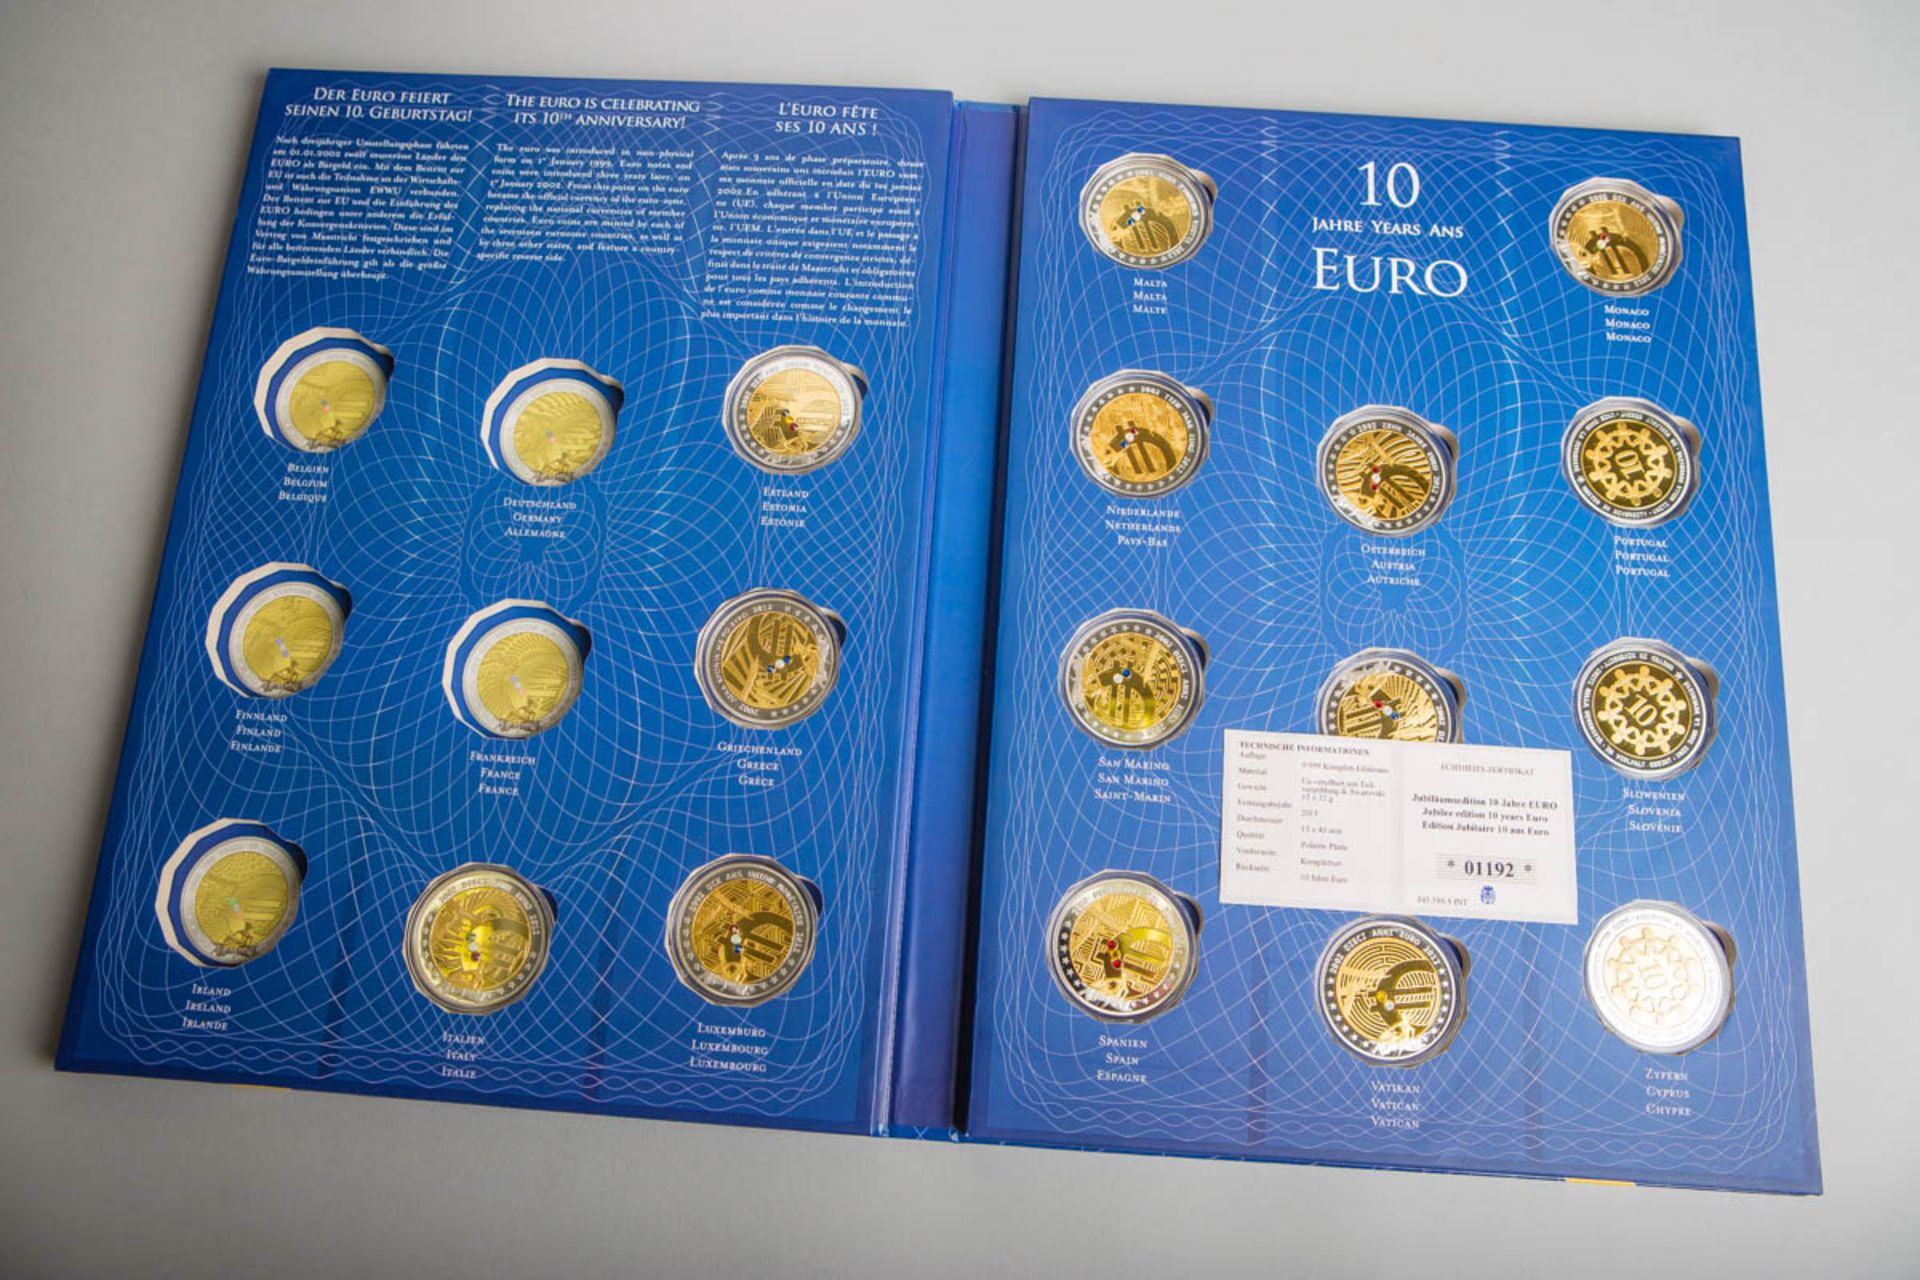 15-teiliges Medaillen-Set "Jubiläumsedition 10 Jahre Euro"